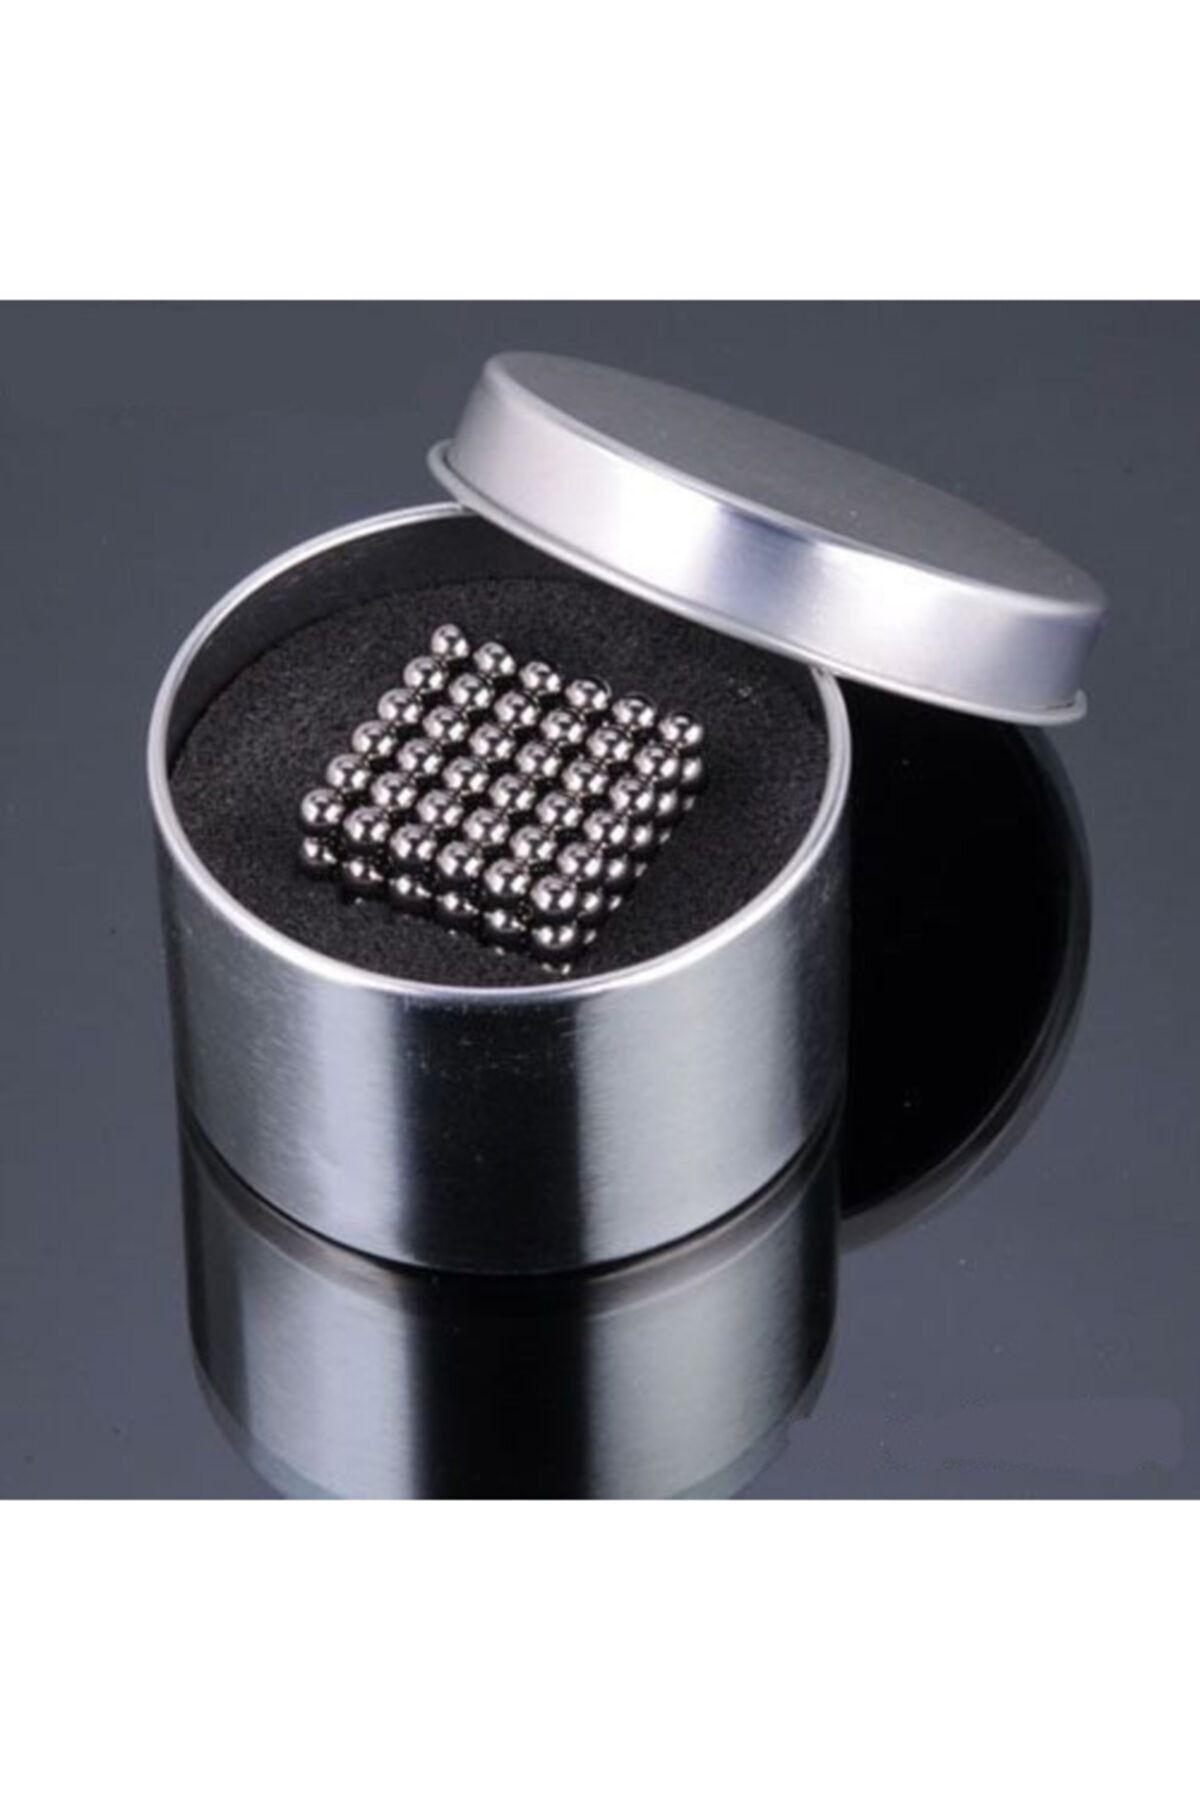 Noriyen Microsonic Neodyum Magic Magnet Neocube Sihirli Mıknatıs Küre